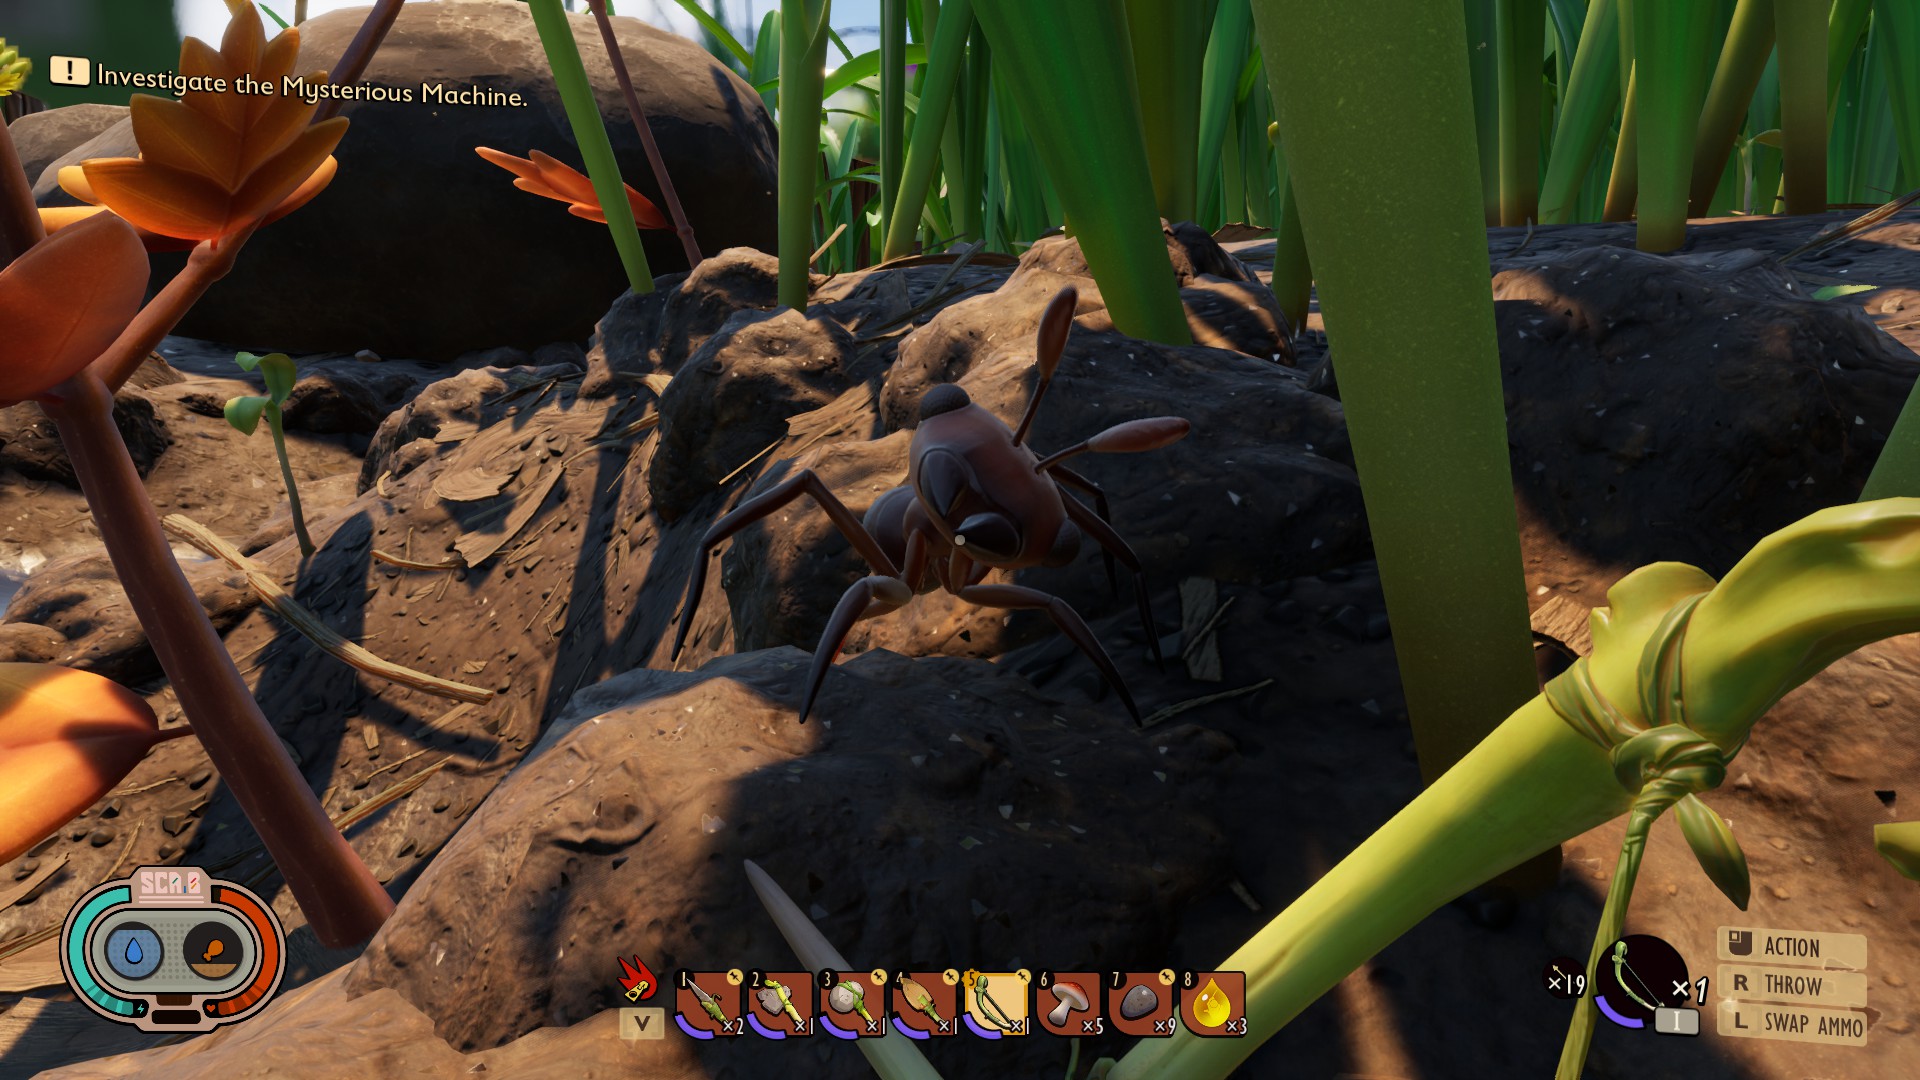 Una hormiga mira con curiosidad al jugador, inclinando la cabeza como un perro.